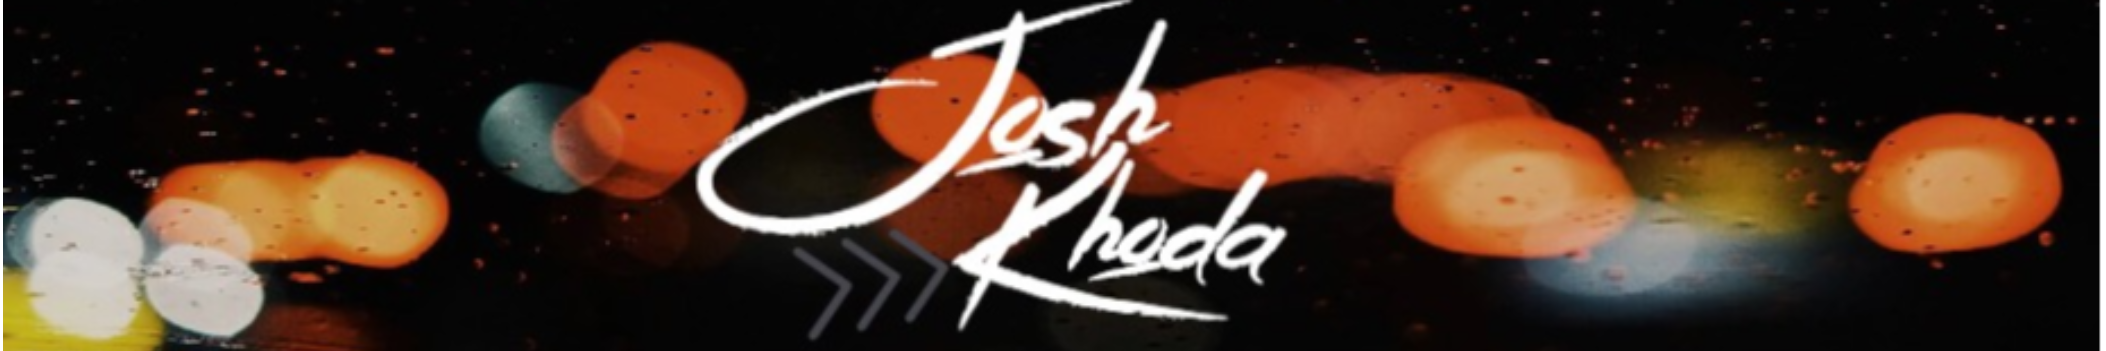 Josh Khoda